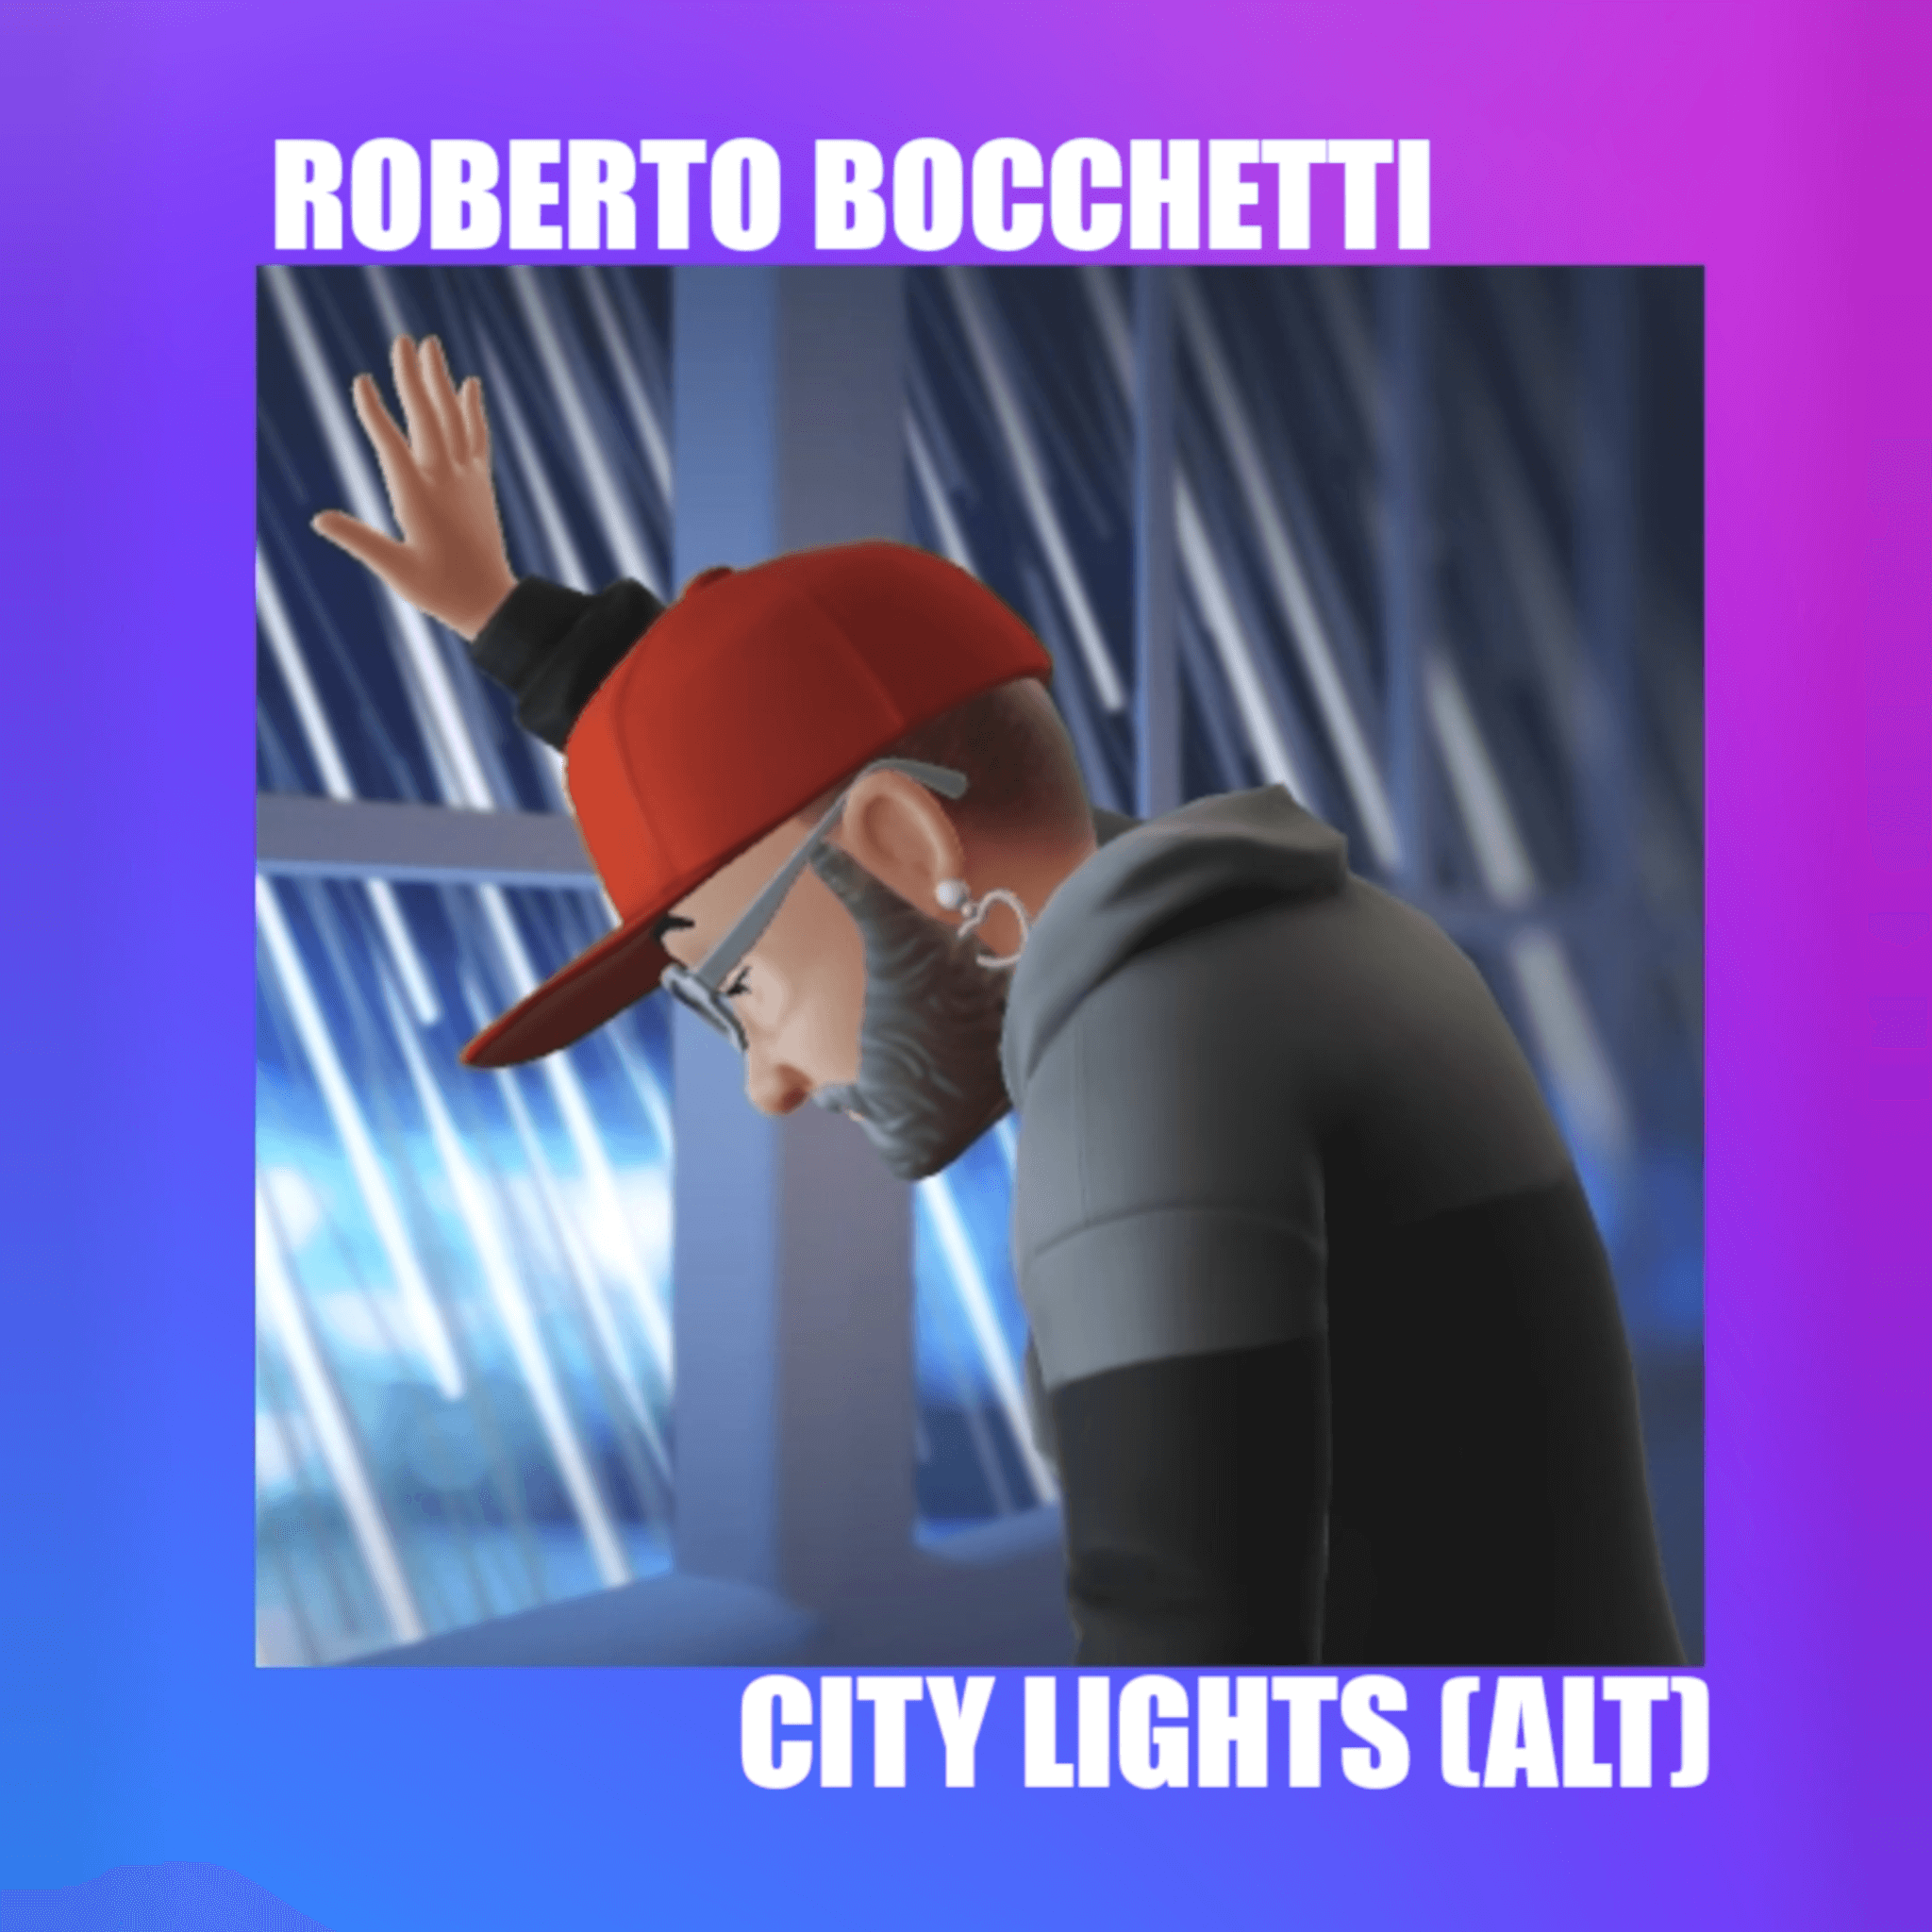 City Lights (ALT) è l'ultimo singolo del DJ e Produttore italiano Roberto Bocchetti